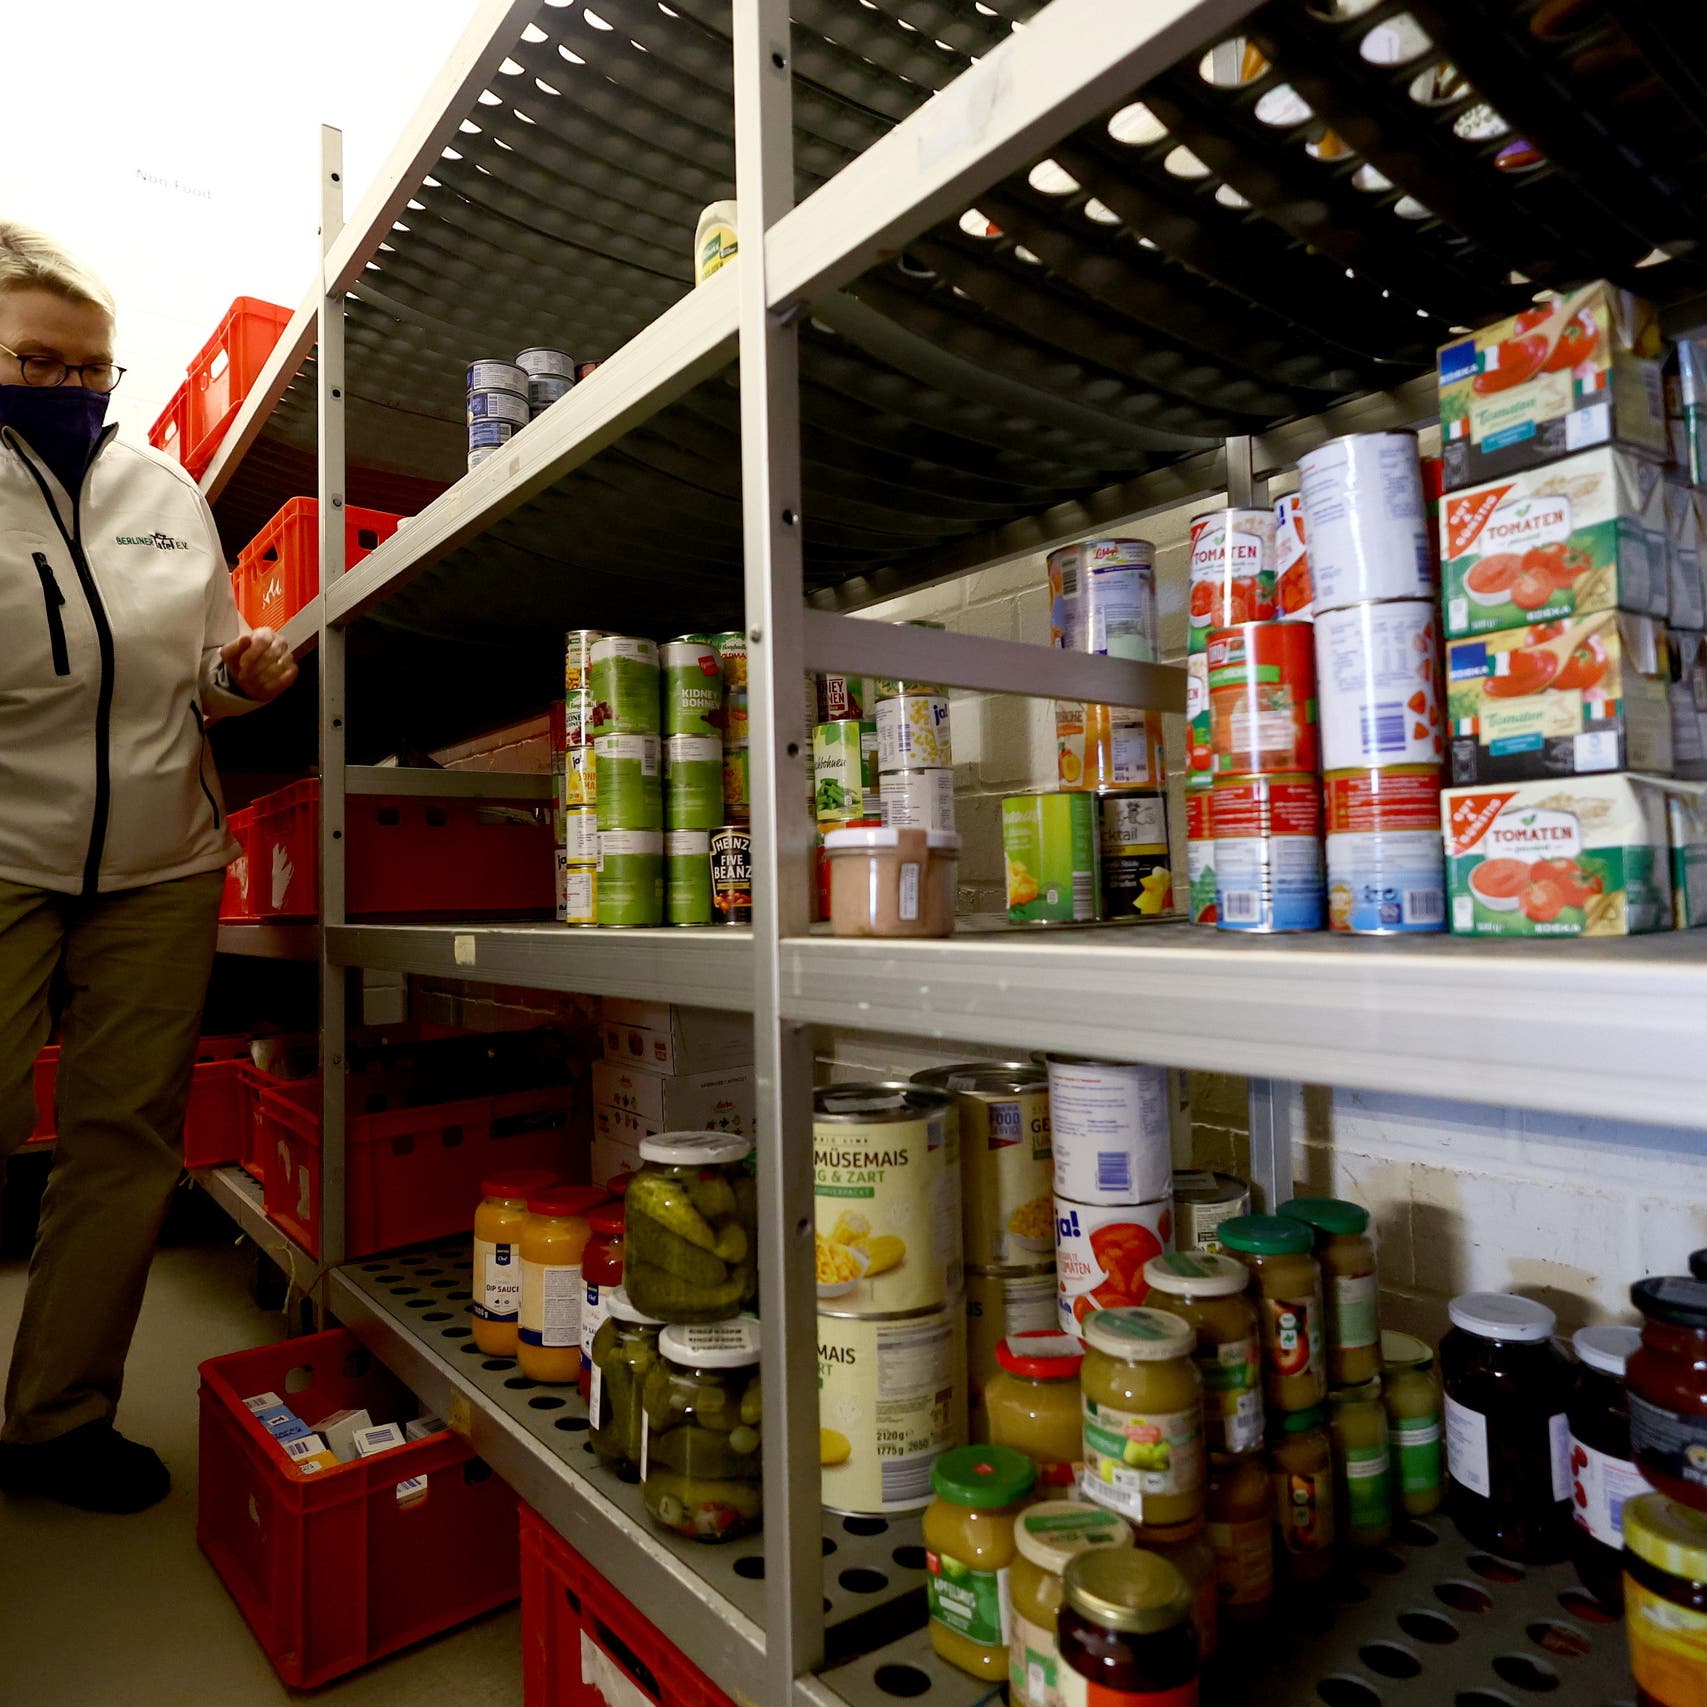 دولة أوروبية دعت مواطنيها لتخزين الطعام في المنازل.. هل تخشى حدوث "كارثة"؟